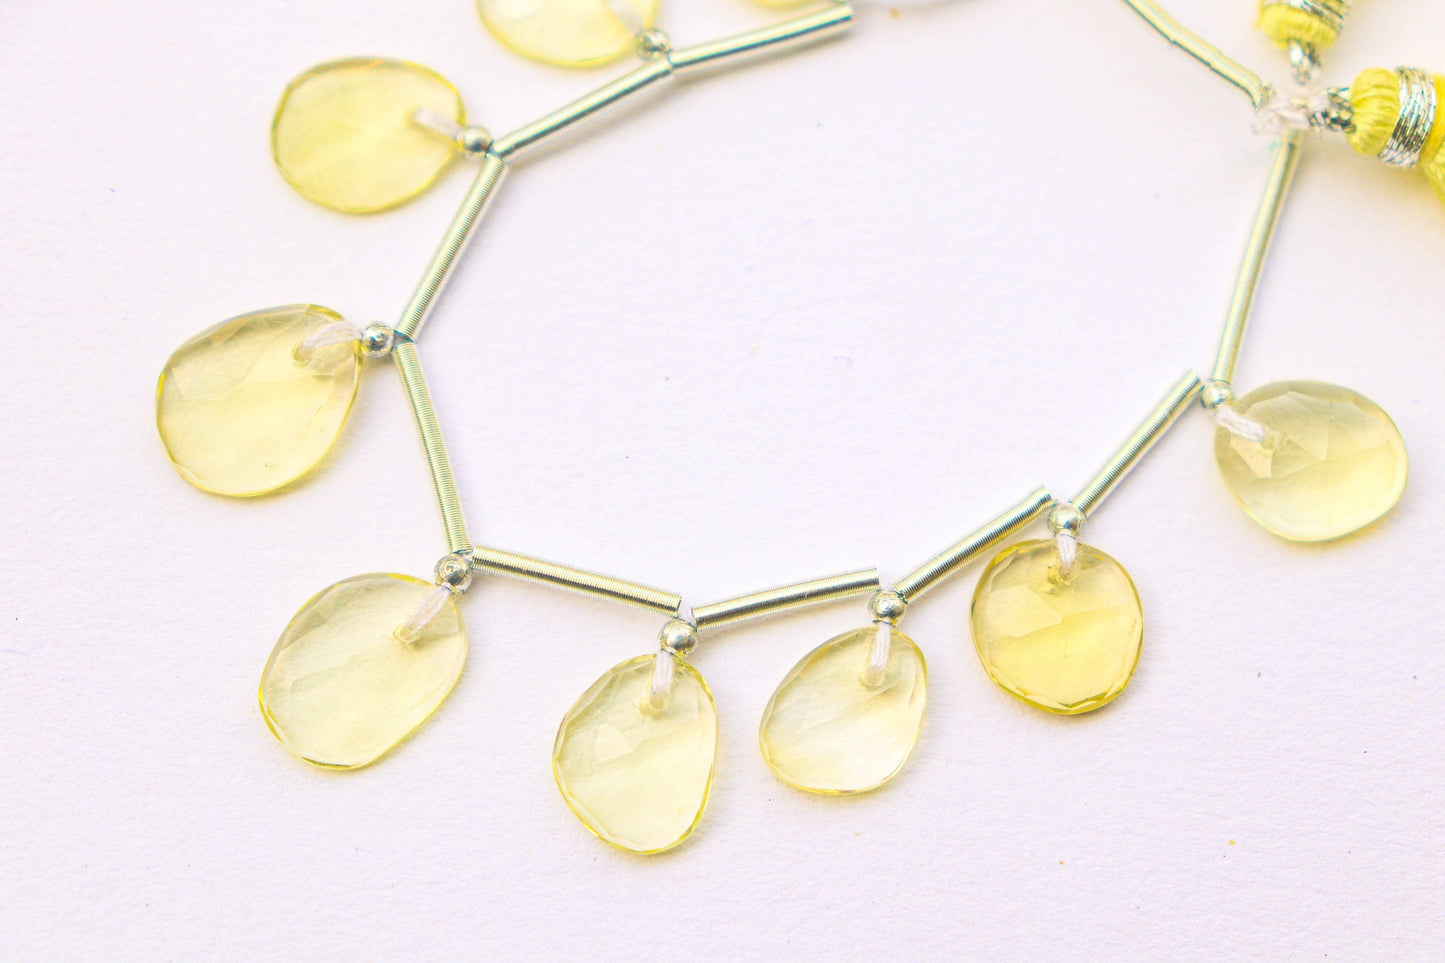 Lemon Quartz Faceted Uneven Shape Rose cut Briolette Beads | 10 Pieces | Natural Lemon quartz Gemstone Beads | Beadsforyourjewelry BFYJ1196-1 Beadsforyourjewelry